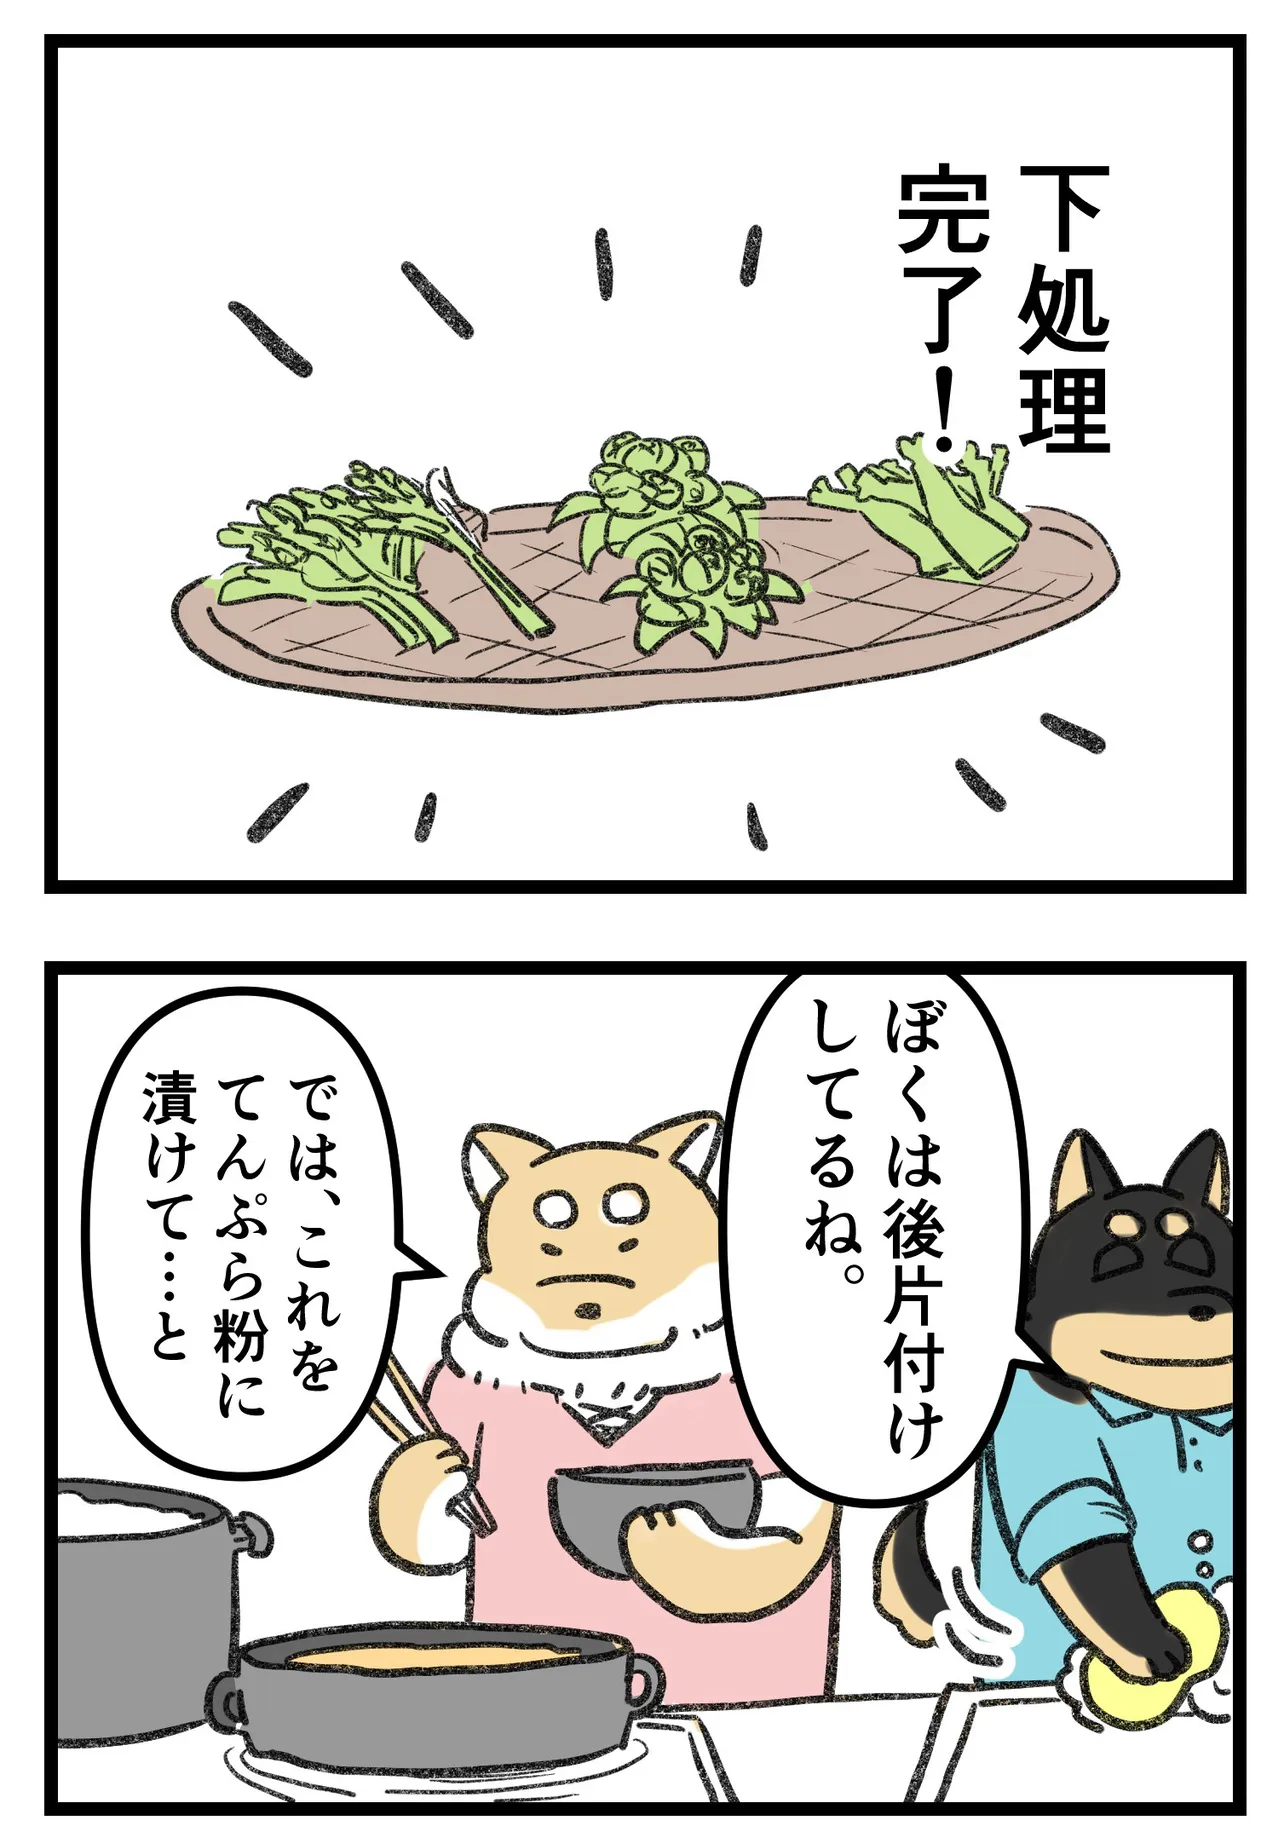 『柴犬二匹が山菜の天ぷらを作って食べる話』(7/16)